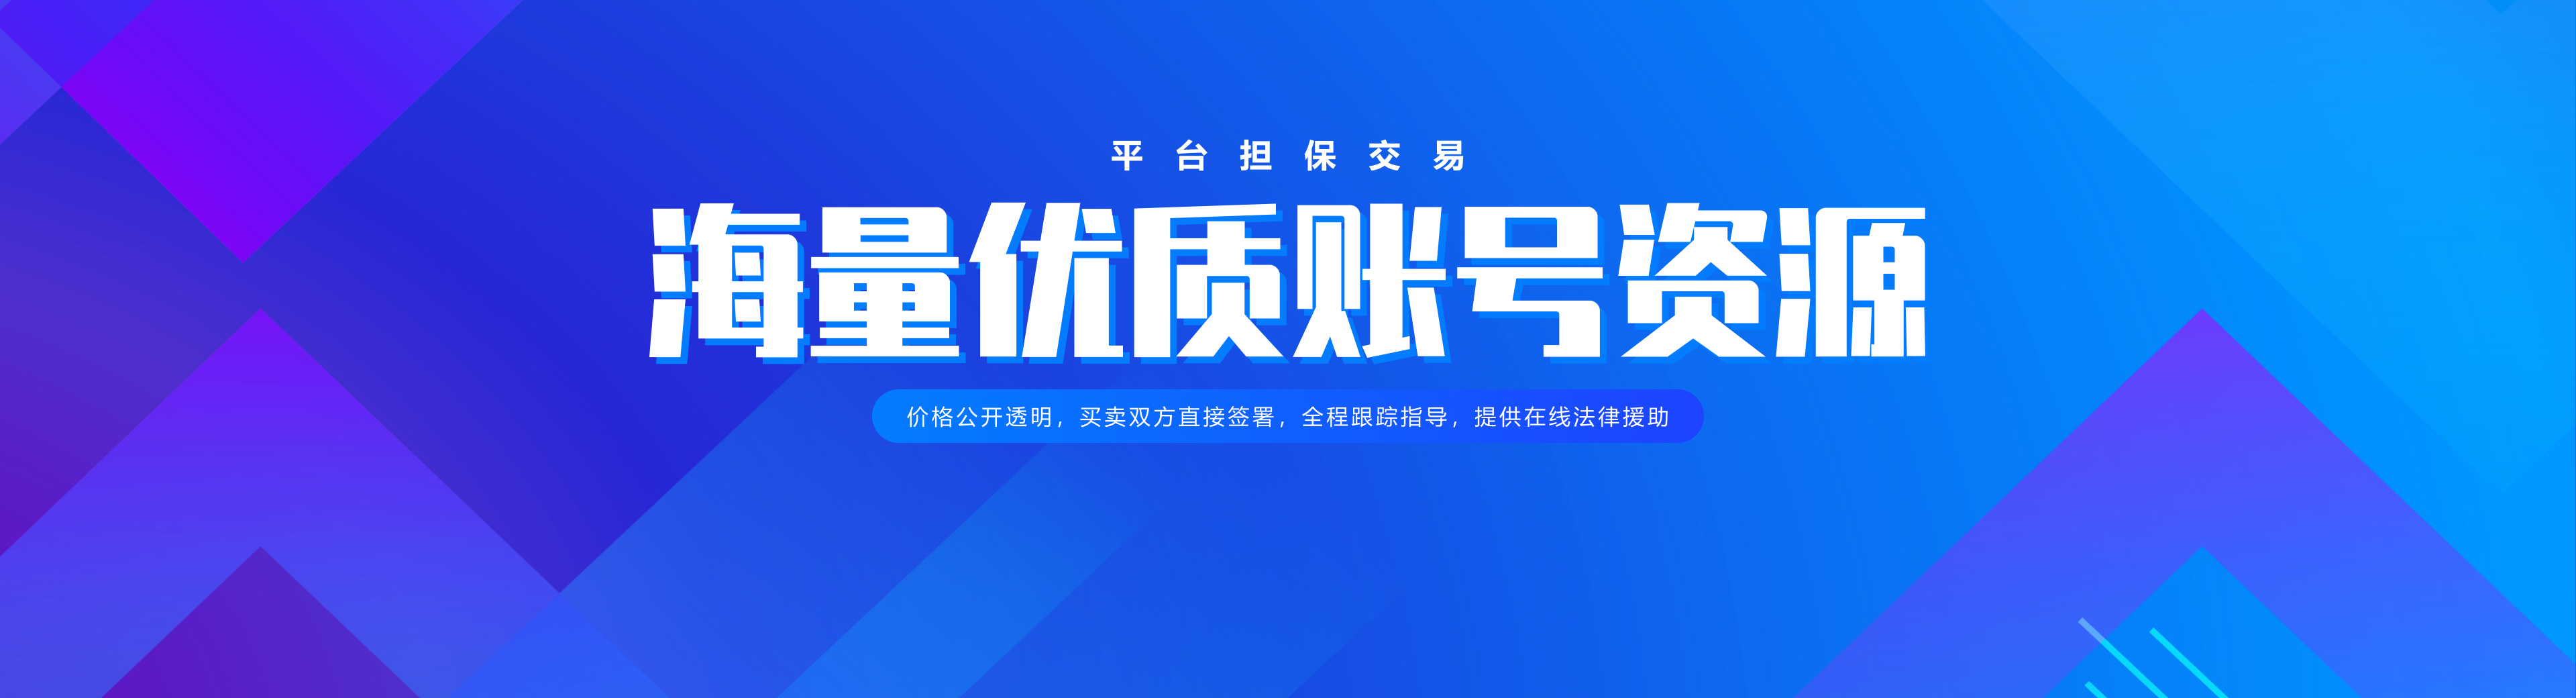 微信公众号交易平台官网banner - pc - 2